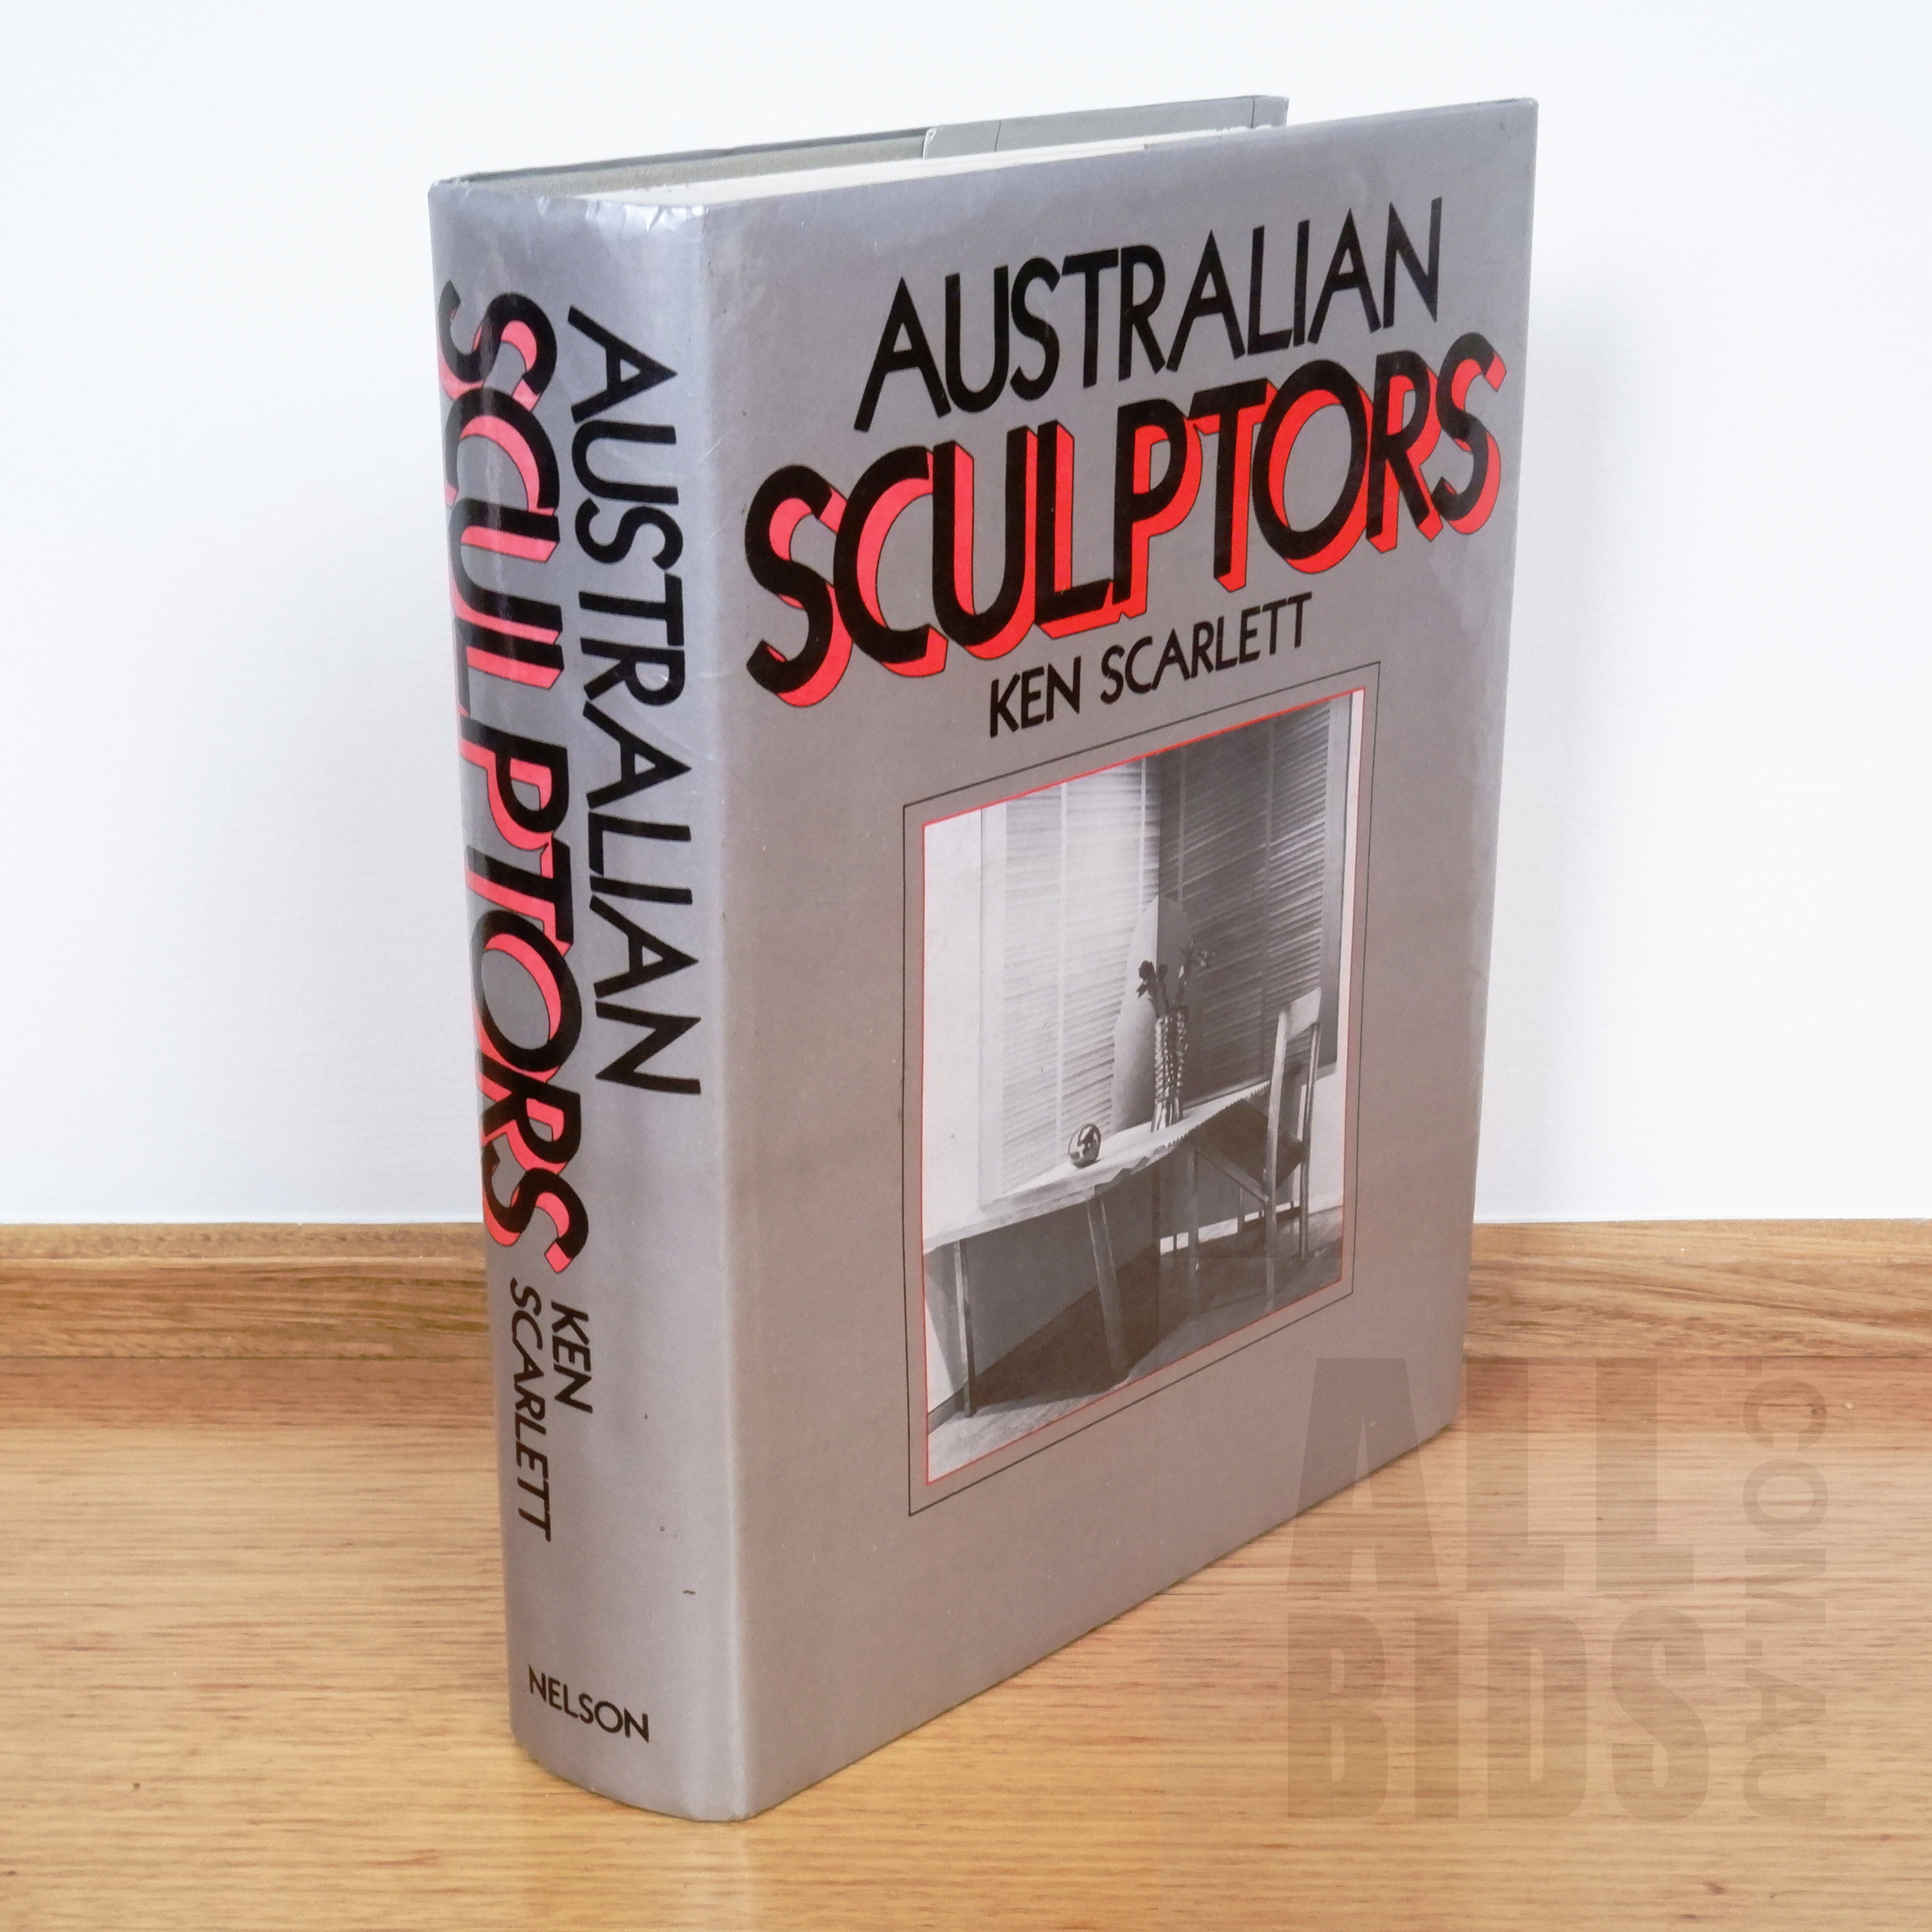 'Ken Scarlett, Australian Sculptors, Nelson Australia, 1980'